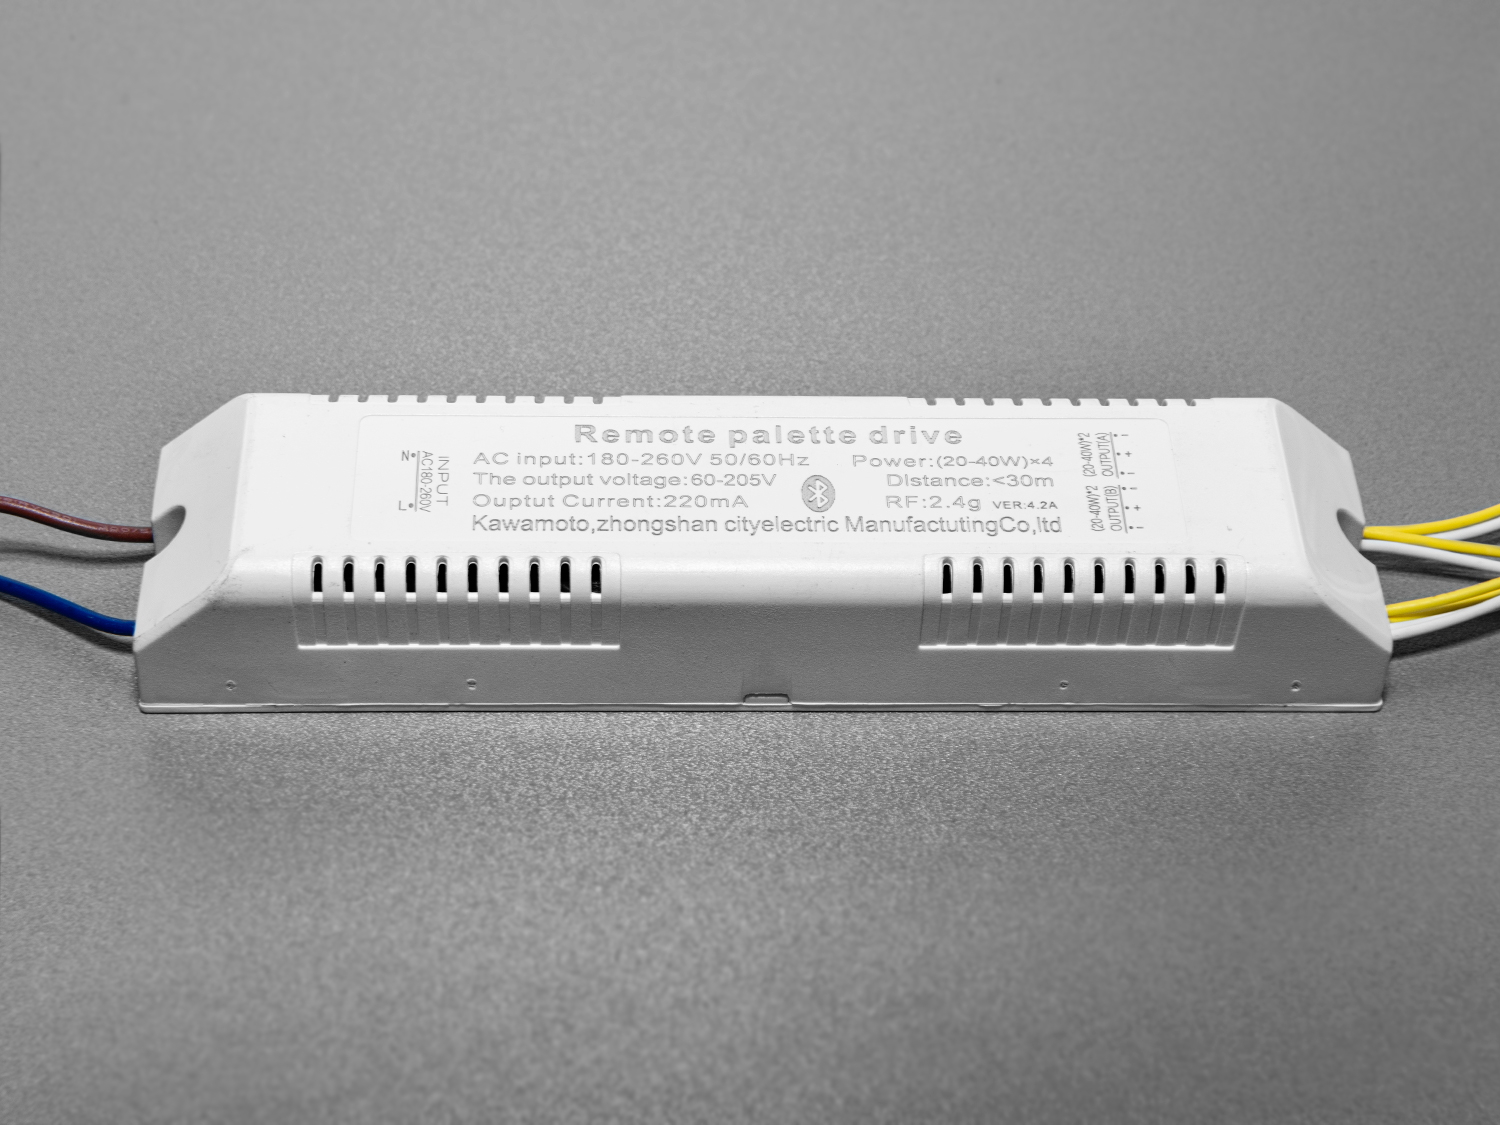 Універсальний комплект для переобладнання світлодіодних люстр.
Блок приймача пульта встановлюється місце рідного блоку живлення світлодіодної люстри.
Цей комплект може бути використаний на люстрах з робочим струмом світлодіодних модулів від 210 до 300 мА.
Діммер має 4 вихідні канали для підключення до стандартної світлодіодної люстри, схема підключення 